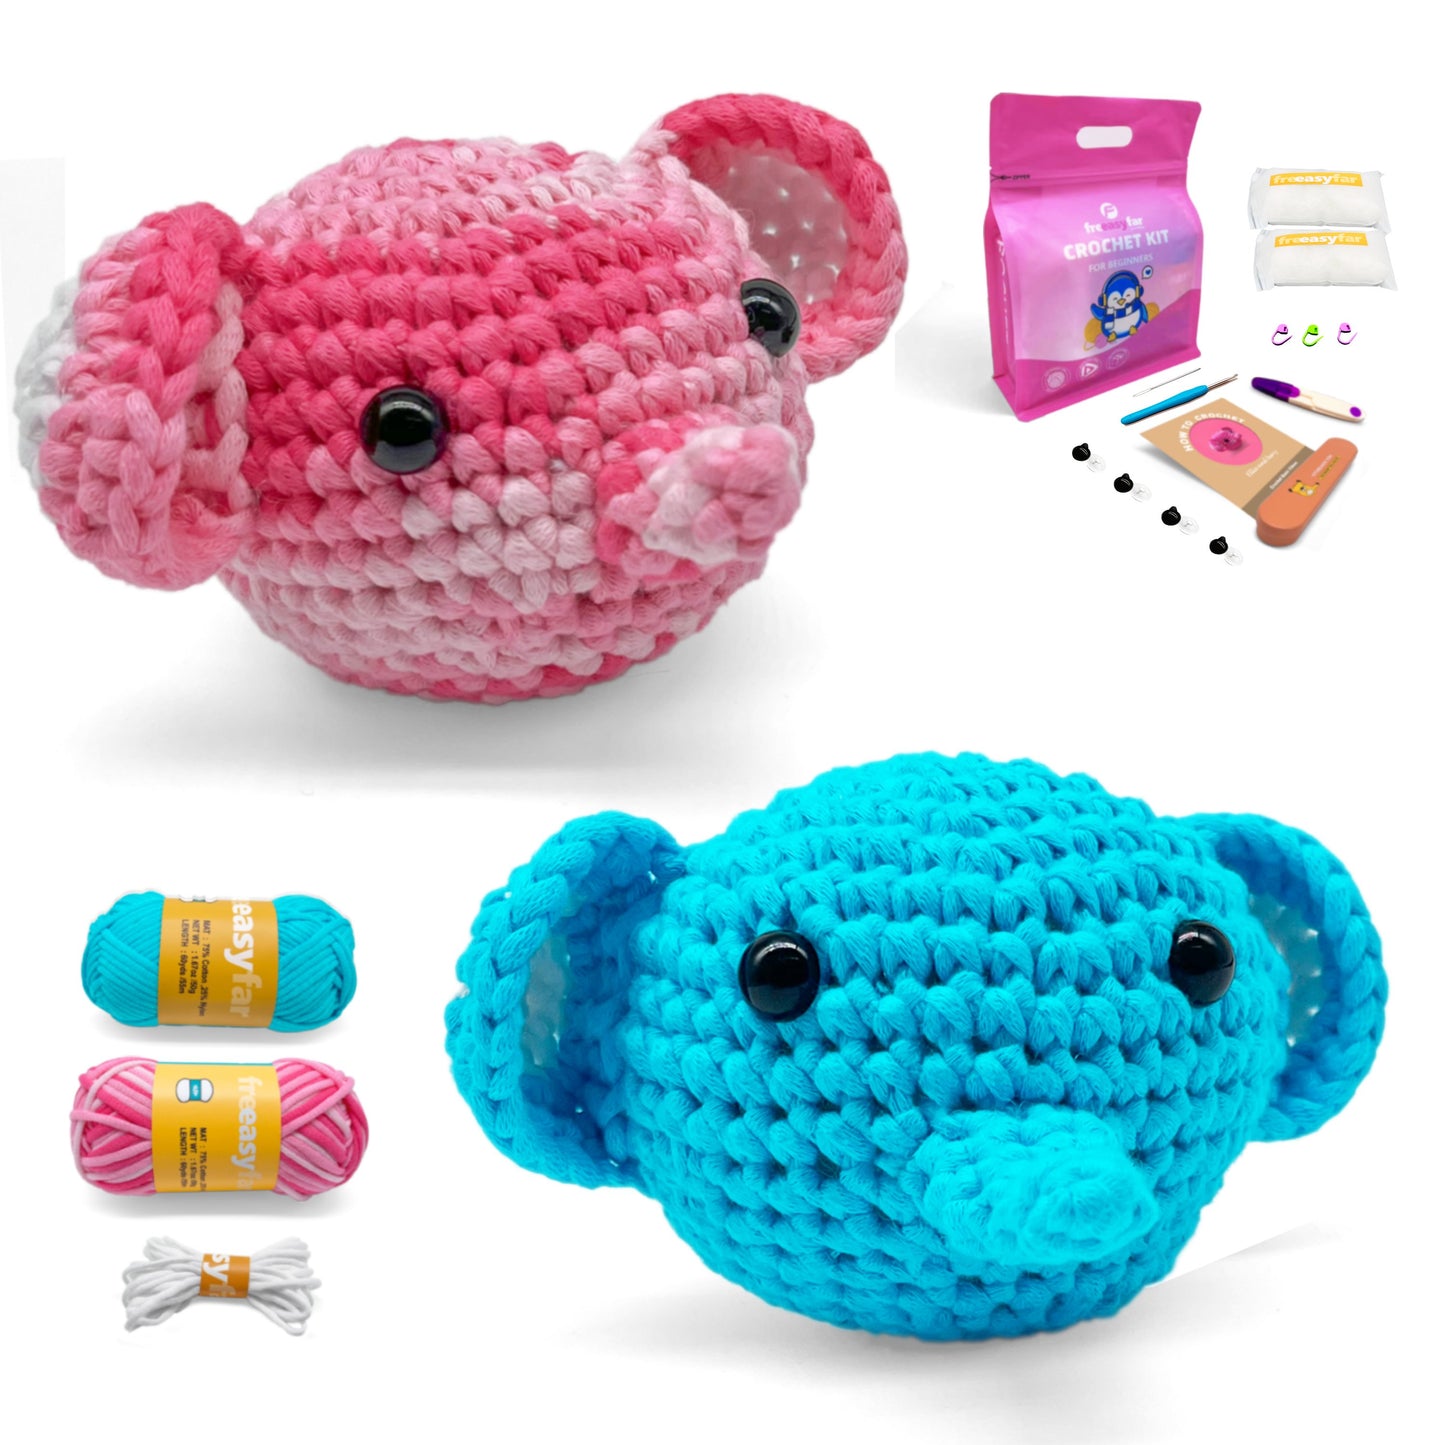 Crochet Kit for Beginners, 2 PCS Elephant Crochet Animal Kit for Adults Kids - Freeasyfar